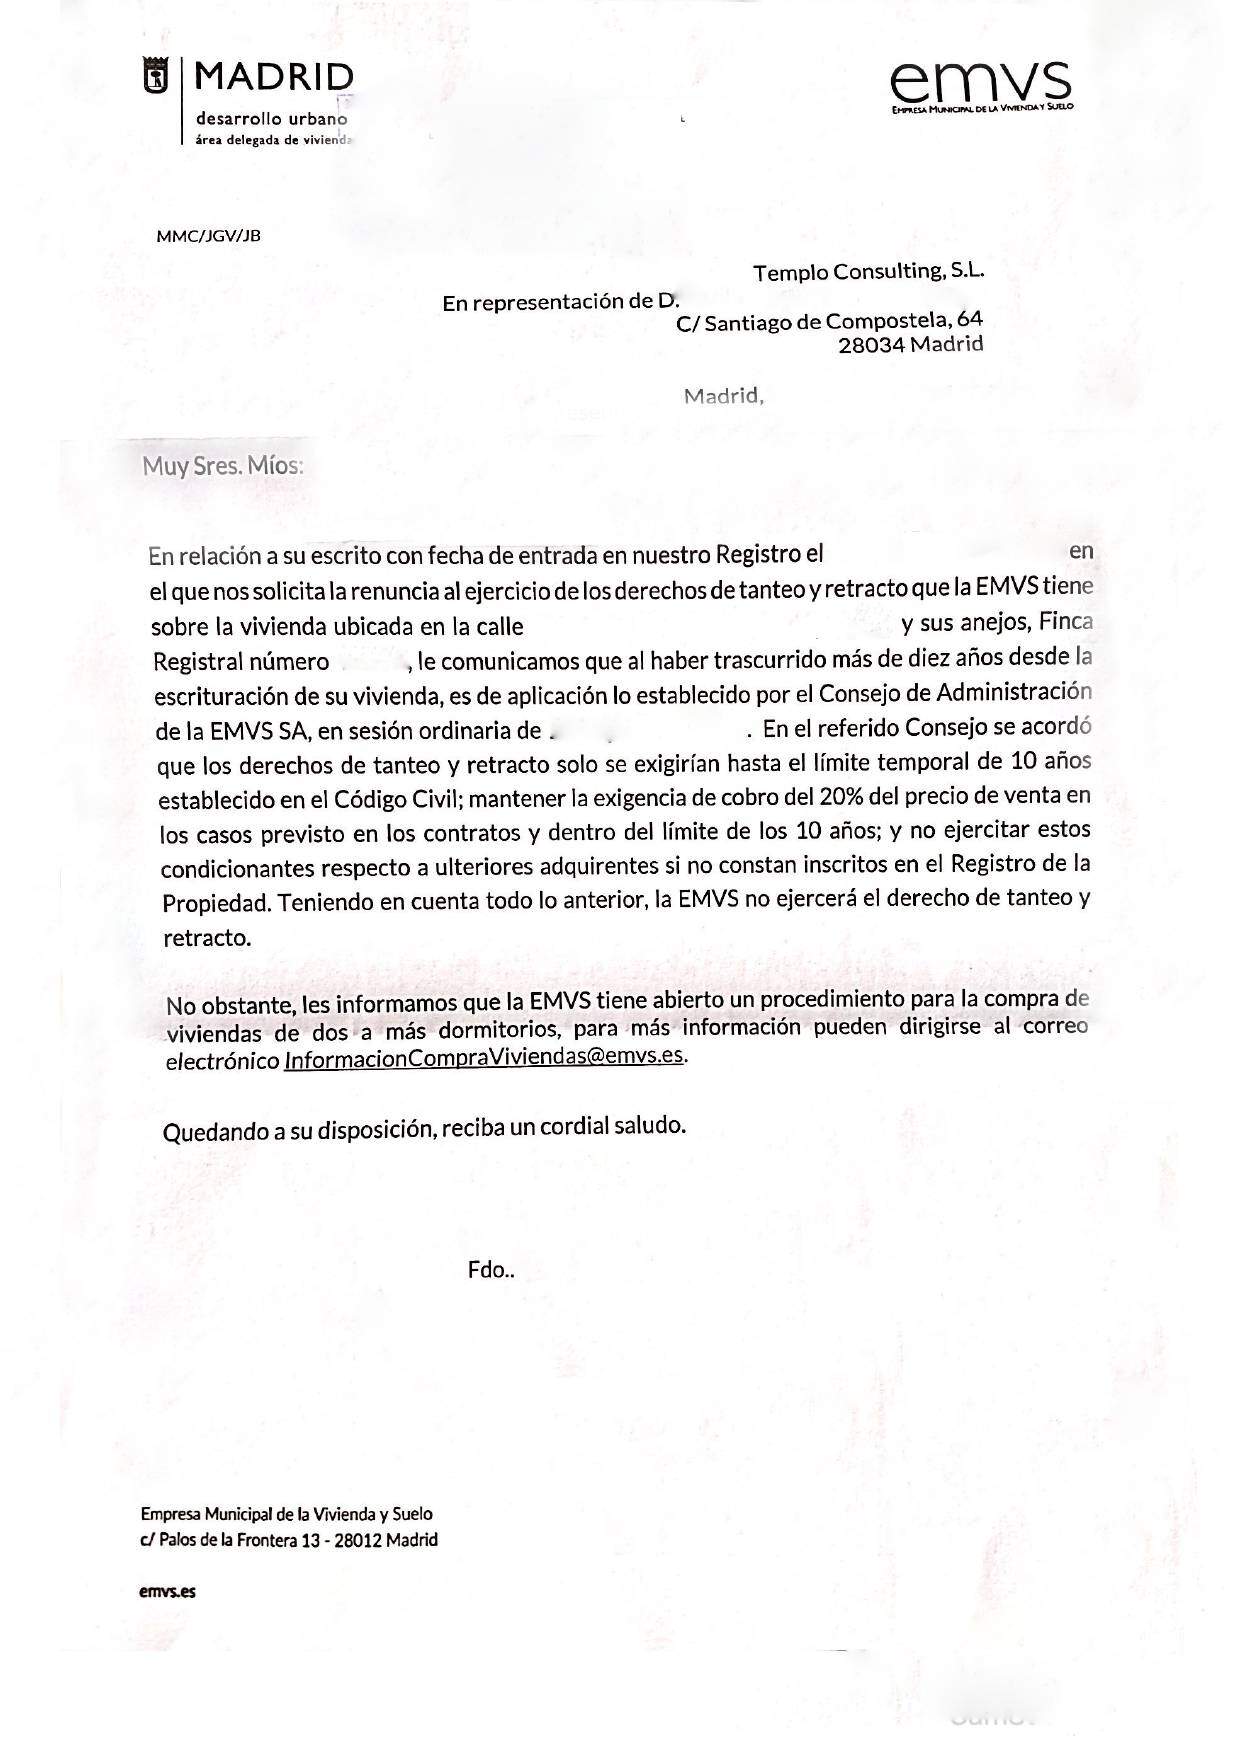 Carta de renuncia de la EMVS a su derecho de tanteo y retracto sobre una VPO en Madrid